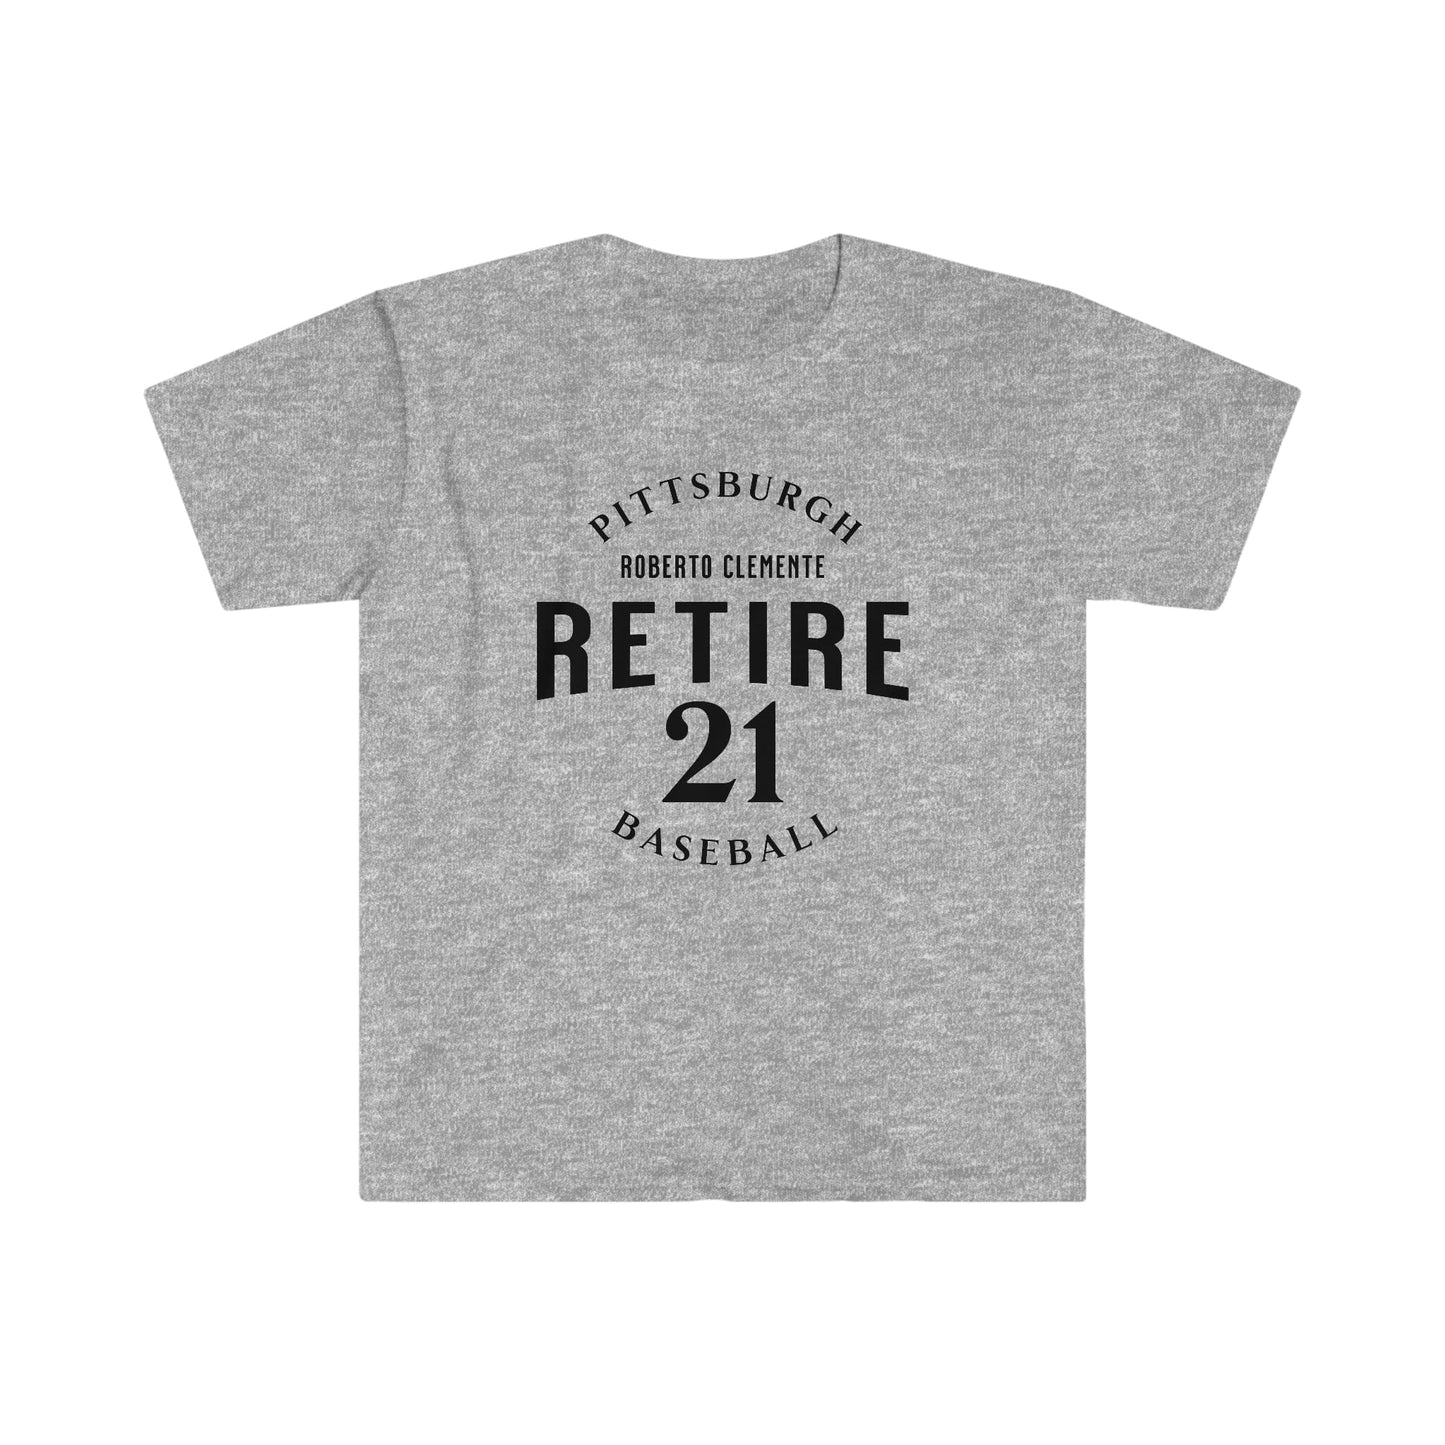 Retire 21 Roberto Clemente T-Shirt T-Shirt Yinzergear Sport Grey S 